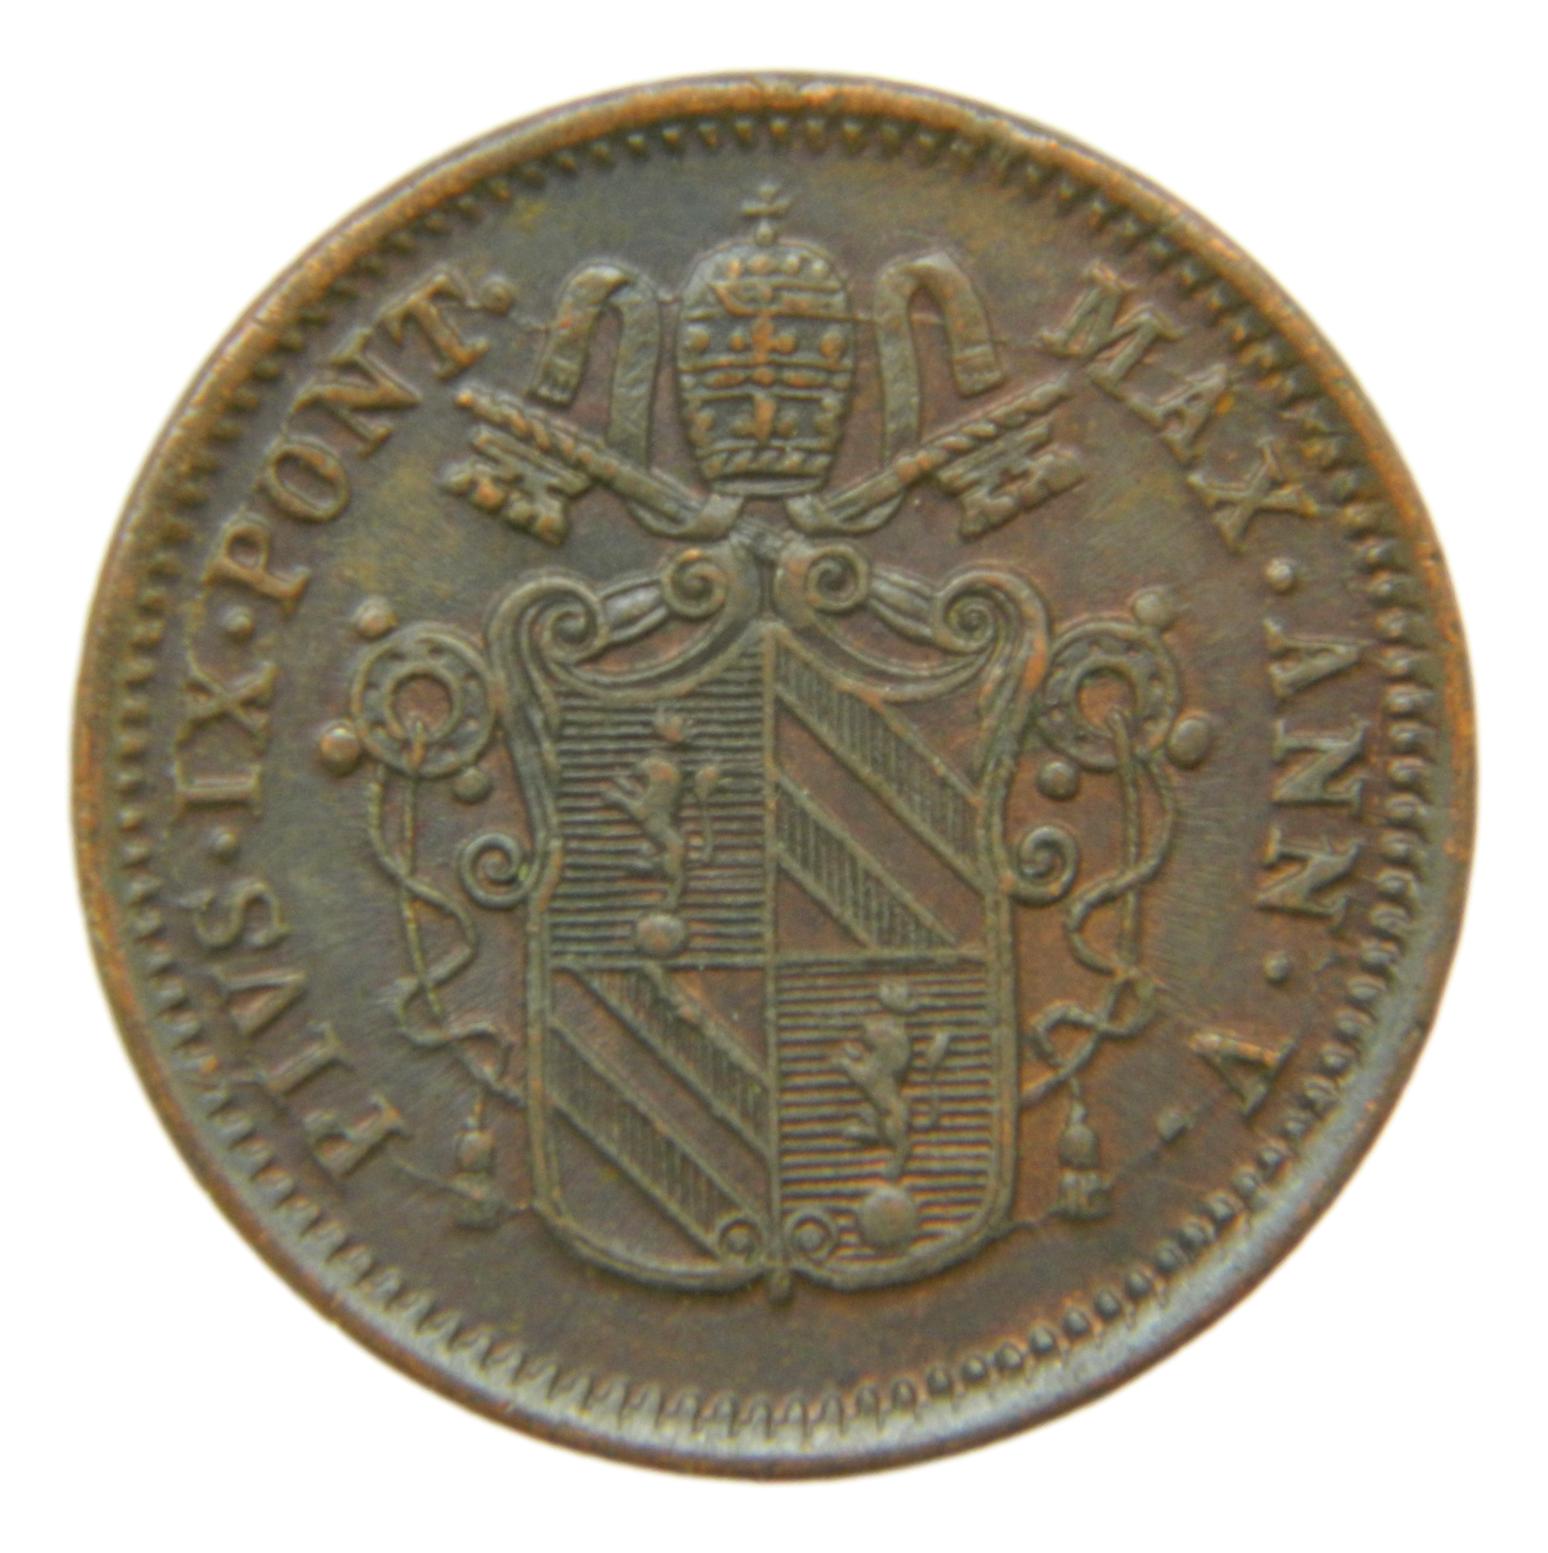 1851 - ESTADOS ITALIANOS - BAIOCCO - ESTADOS PAPALES - S6